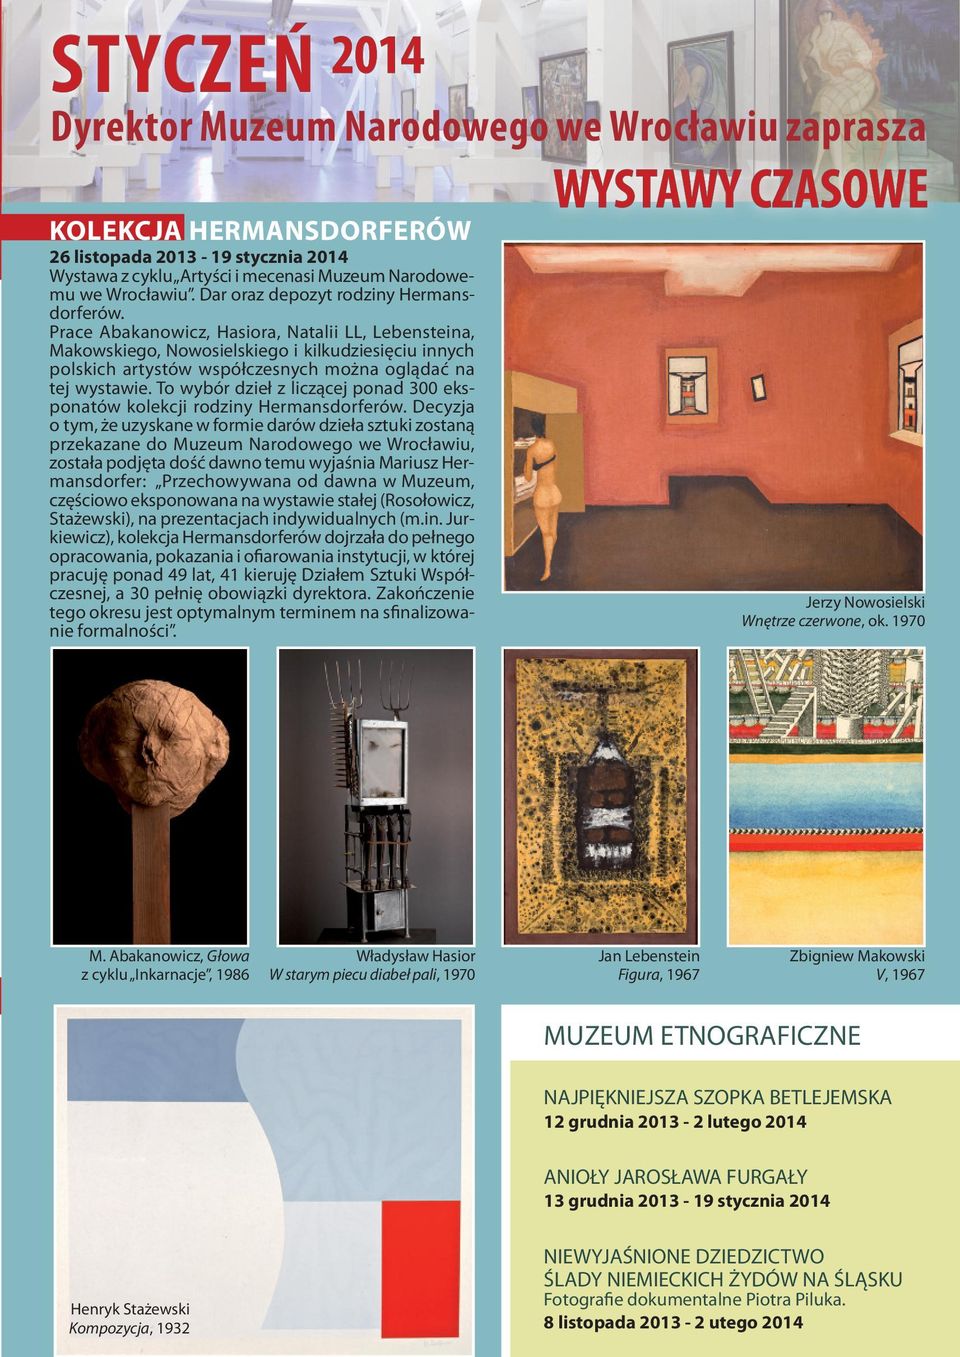 Prace Abakanowicz, Hasiora, Natalii LL, Lebensteina, Makowskiego, Nowosielskiego i kilkudziesięciu innych polskich artystów współczesnych można oglądać na tej wystawie.